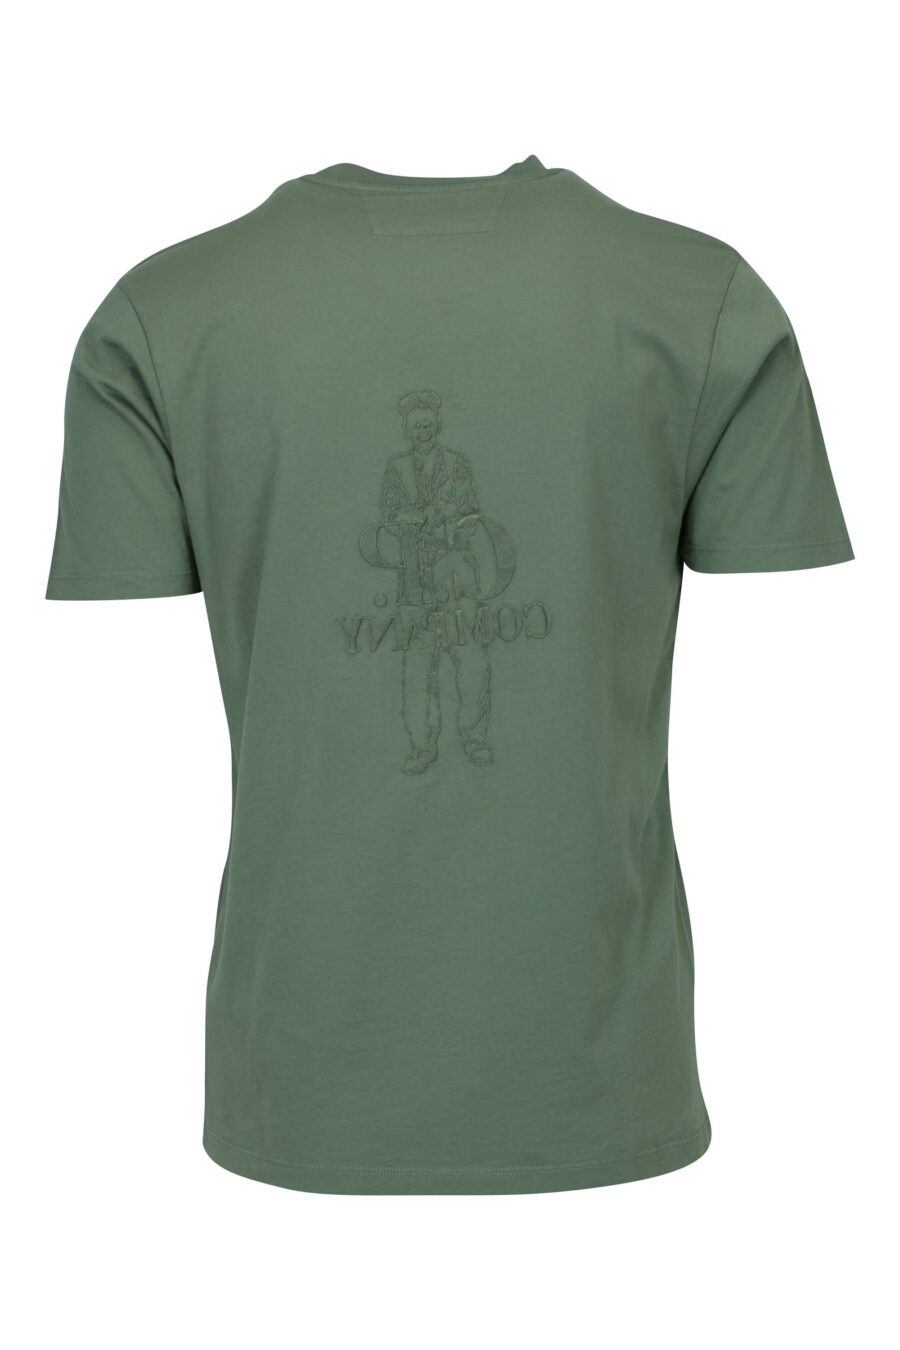 T-shirt gris-vert avec maxilogue marin et logo "cp" - 7620943776539 1